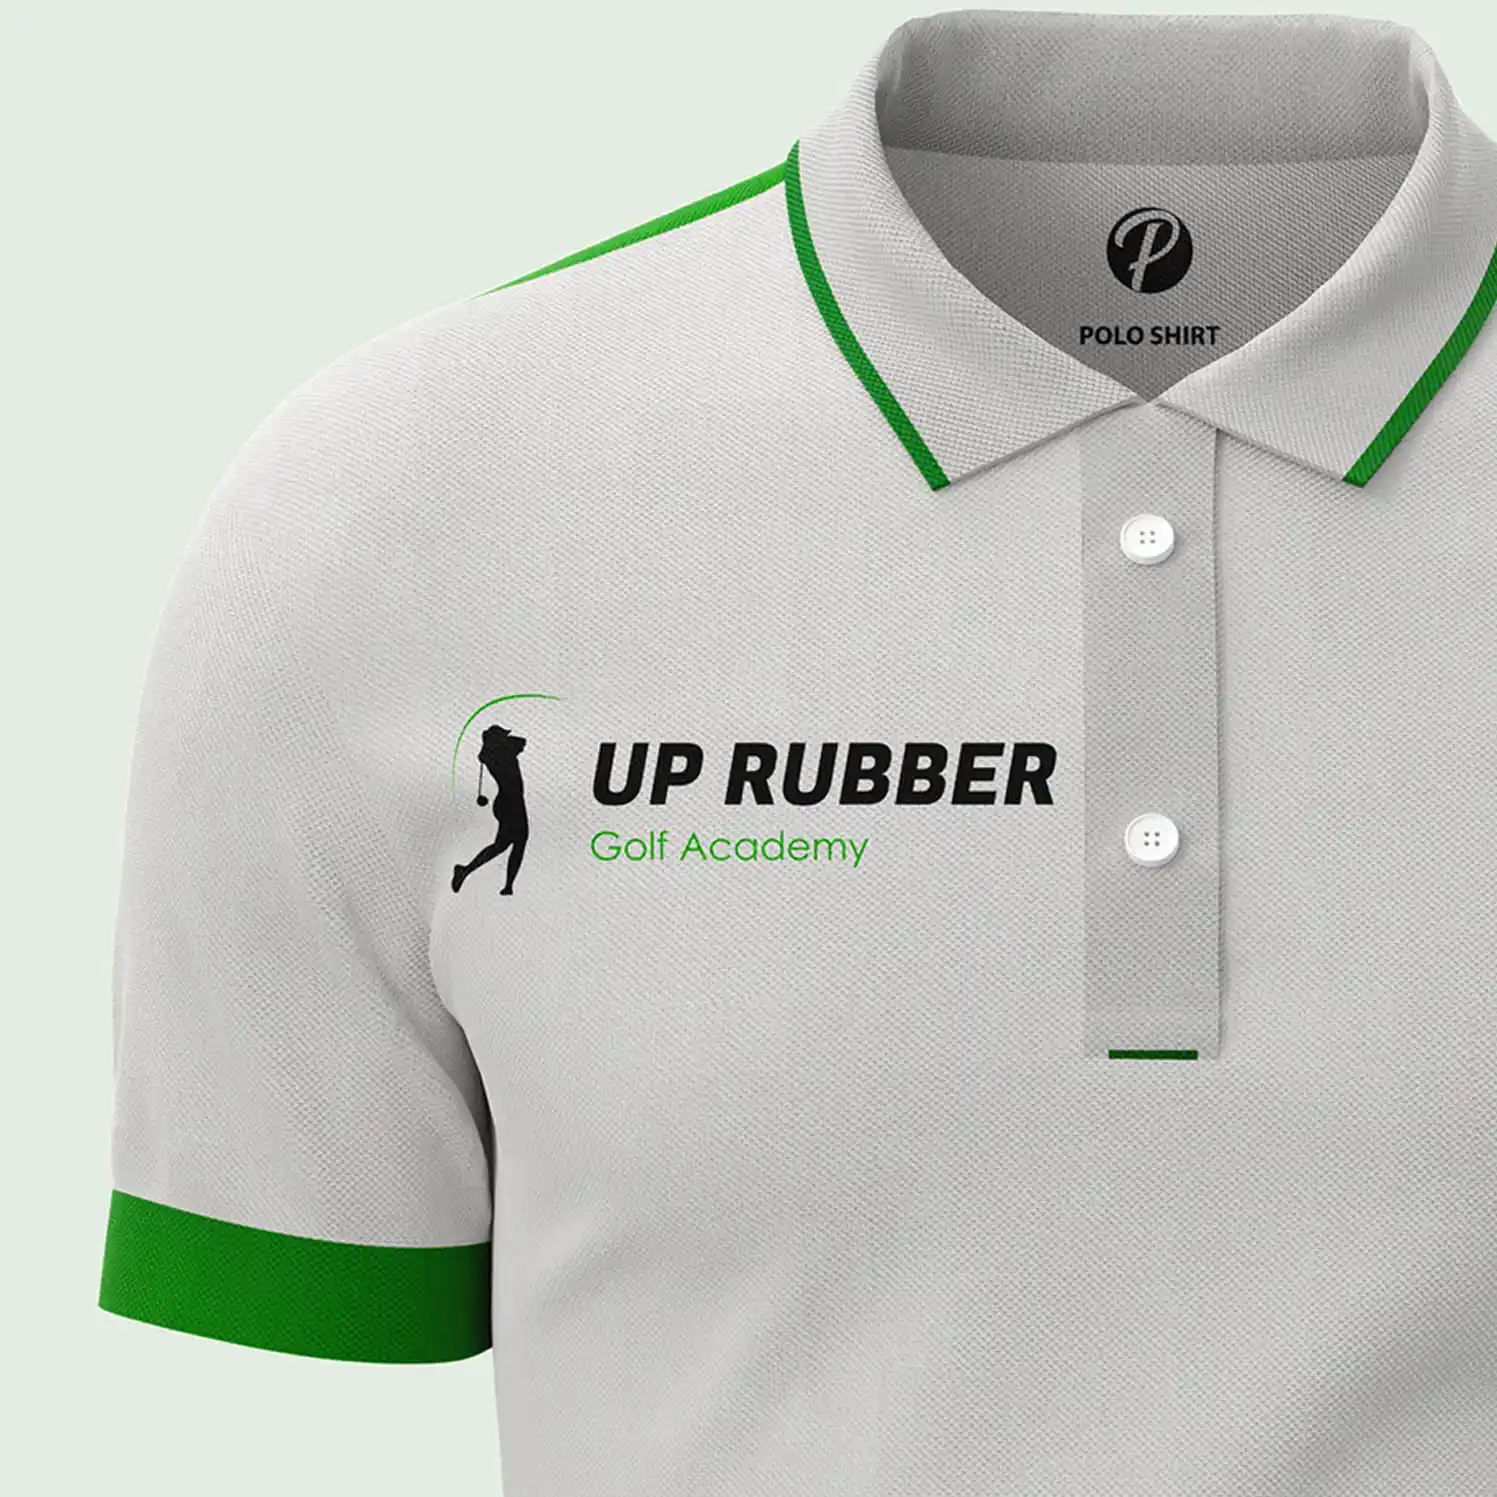 Up Rubber logo design